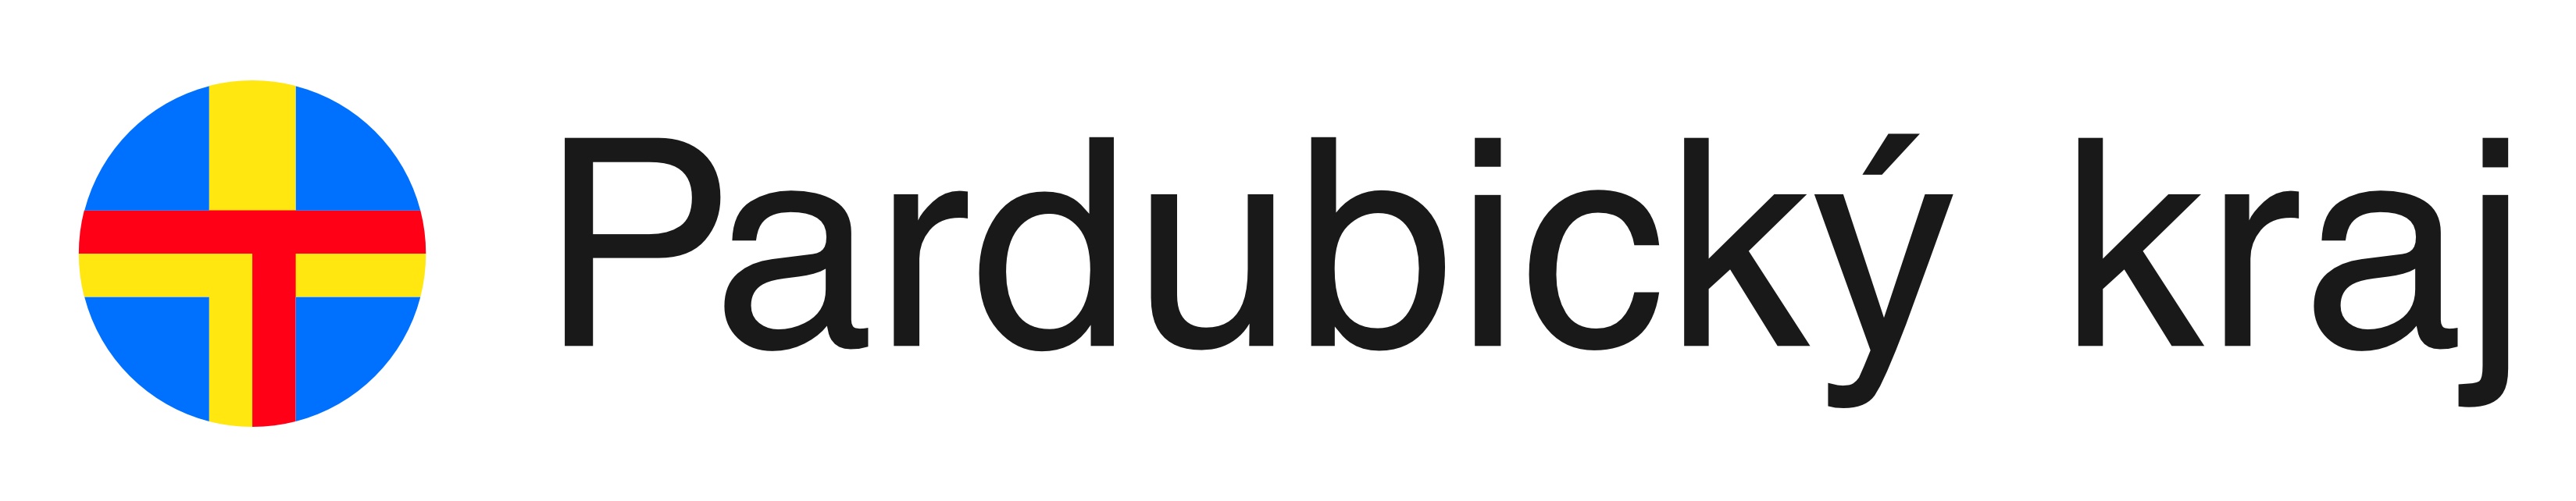 Logo_pardubicky_kraj